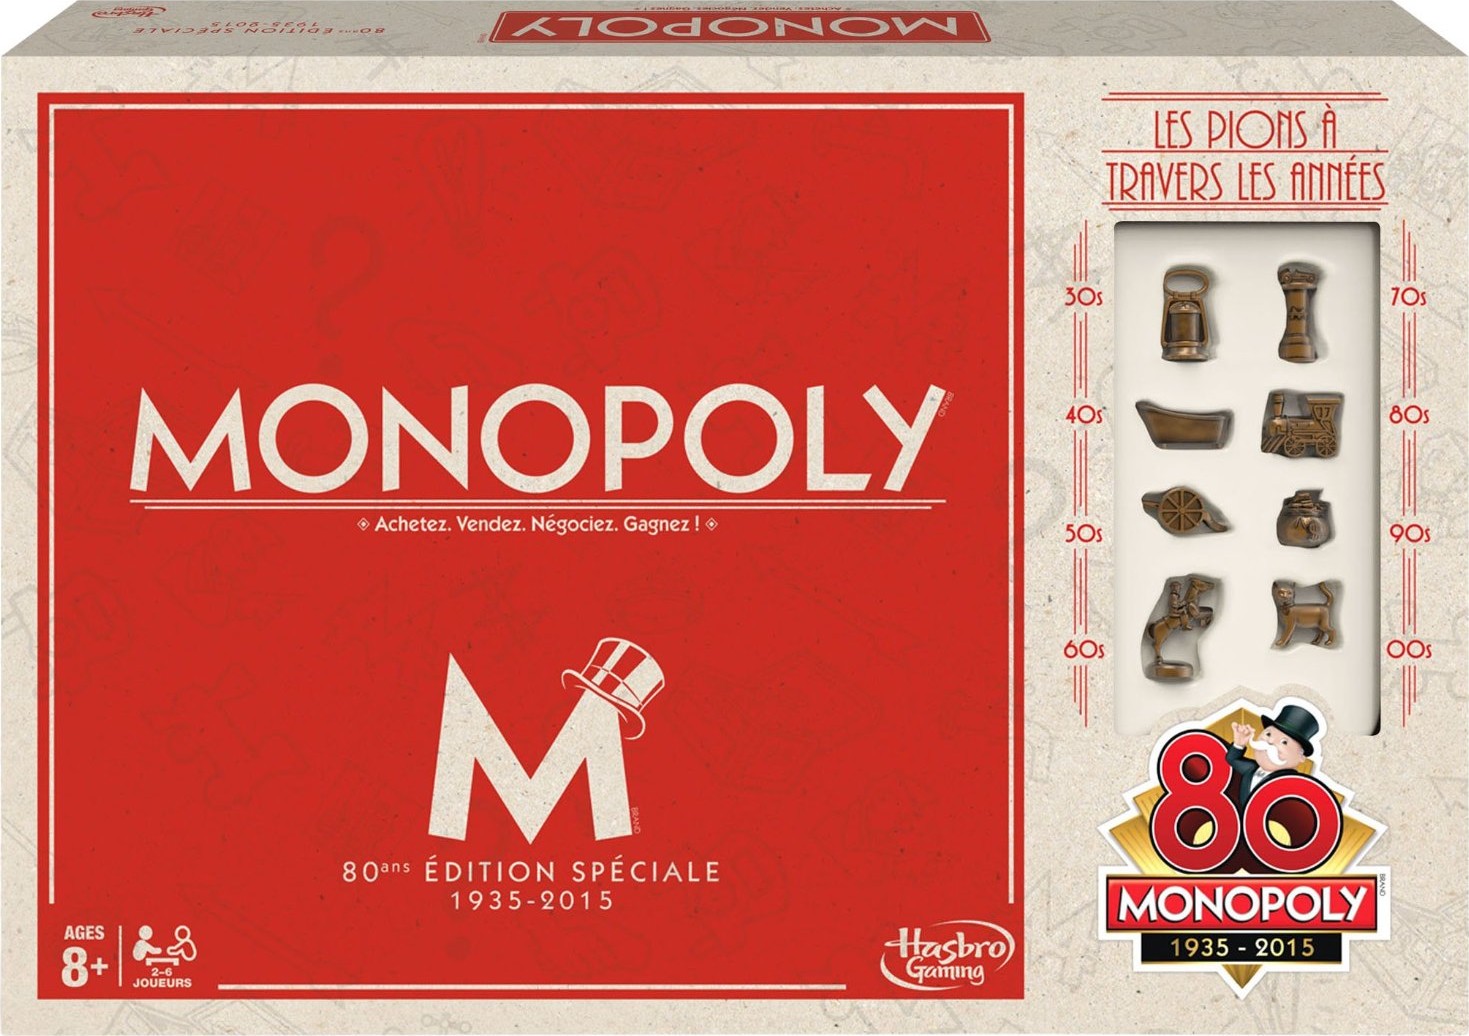 Boite du Monopoly Vintage 80e anniversaire